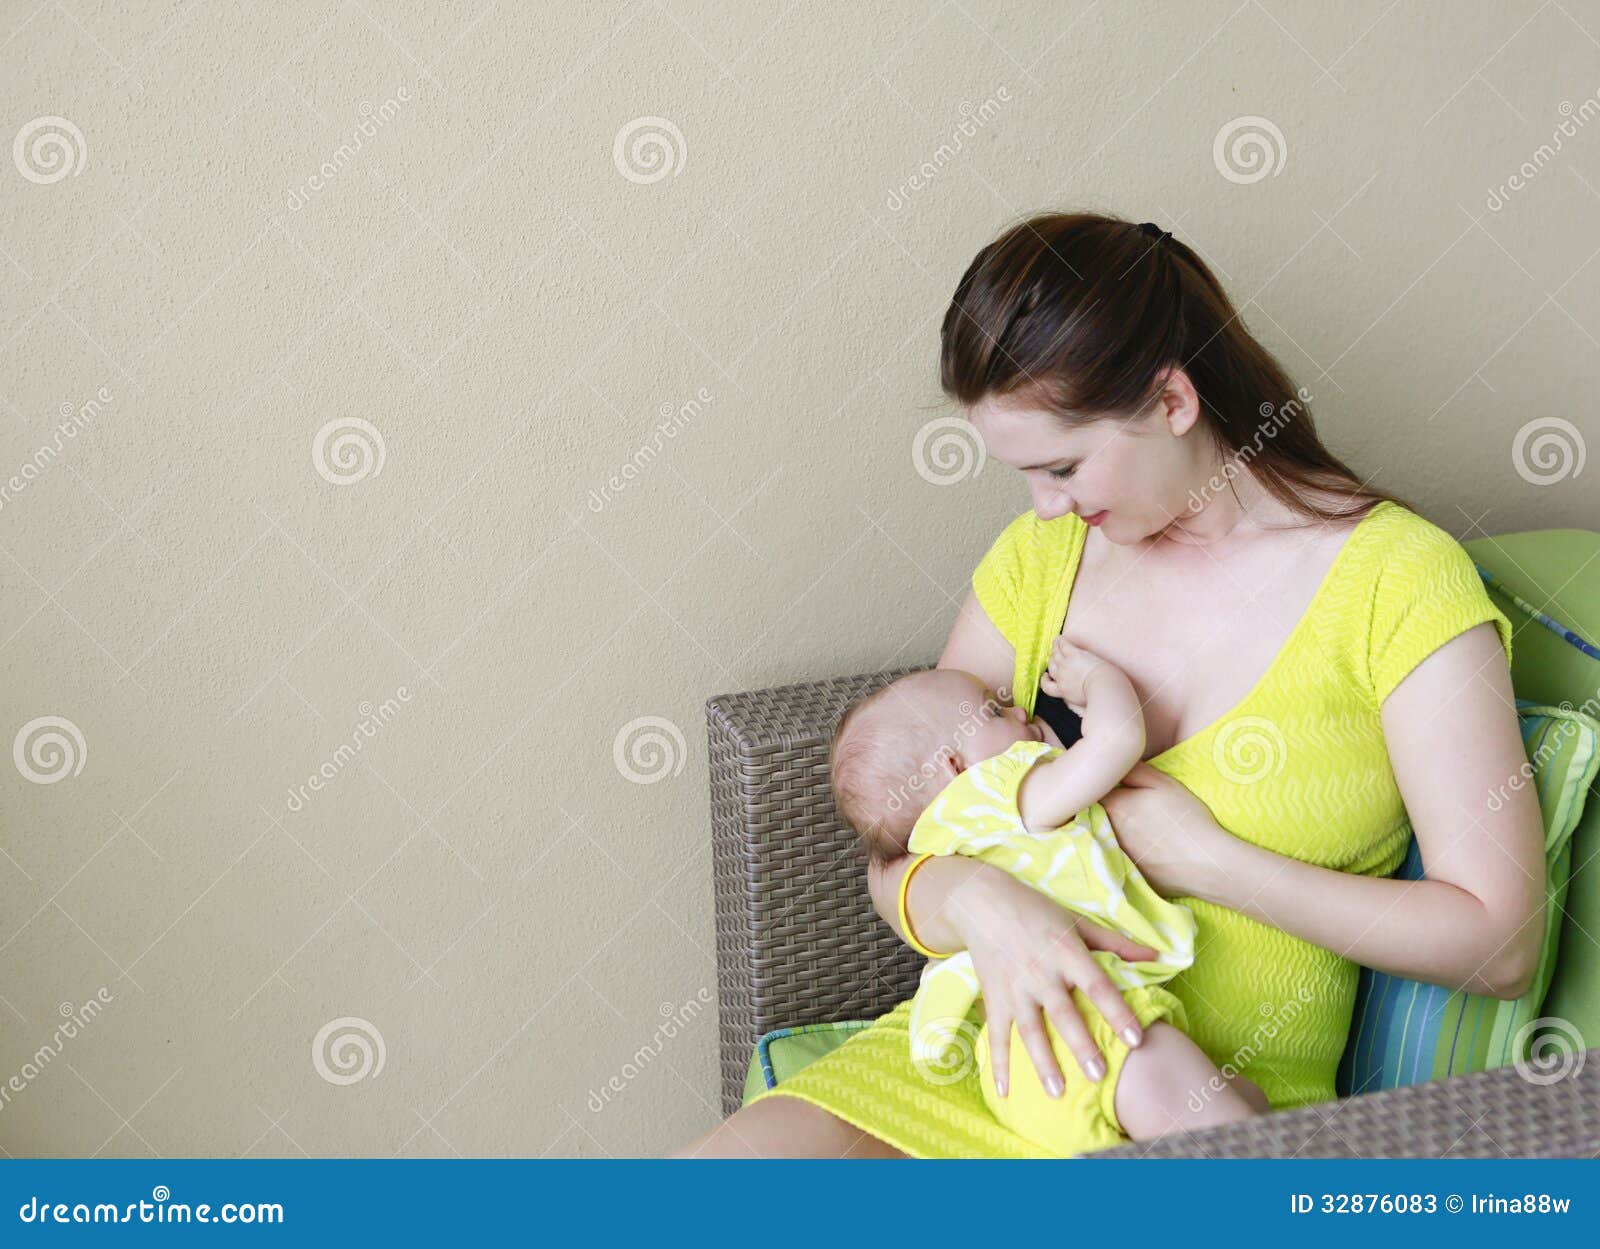 сын держит за грудь маму фото 111